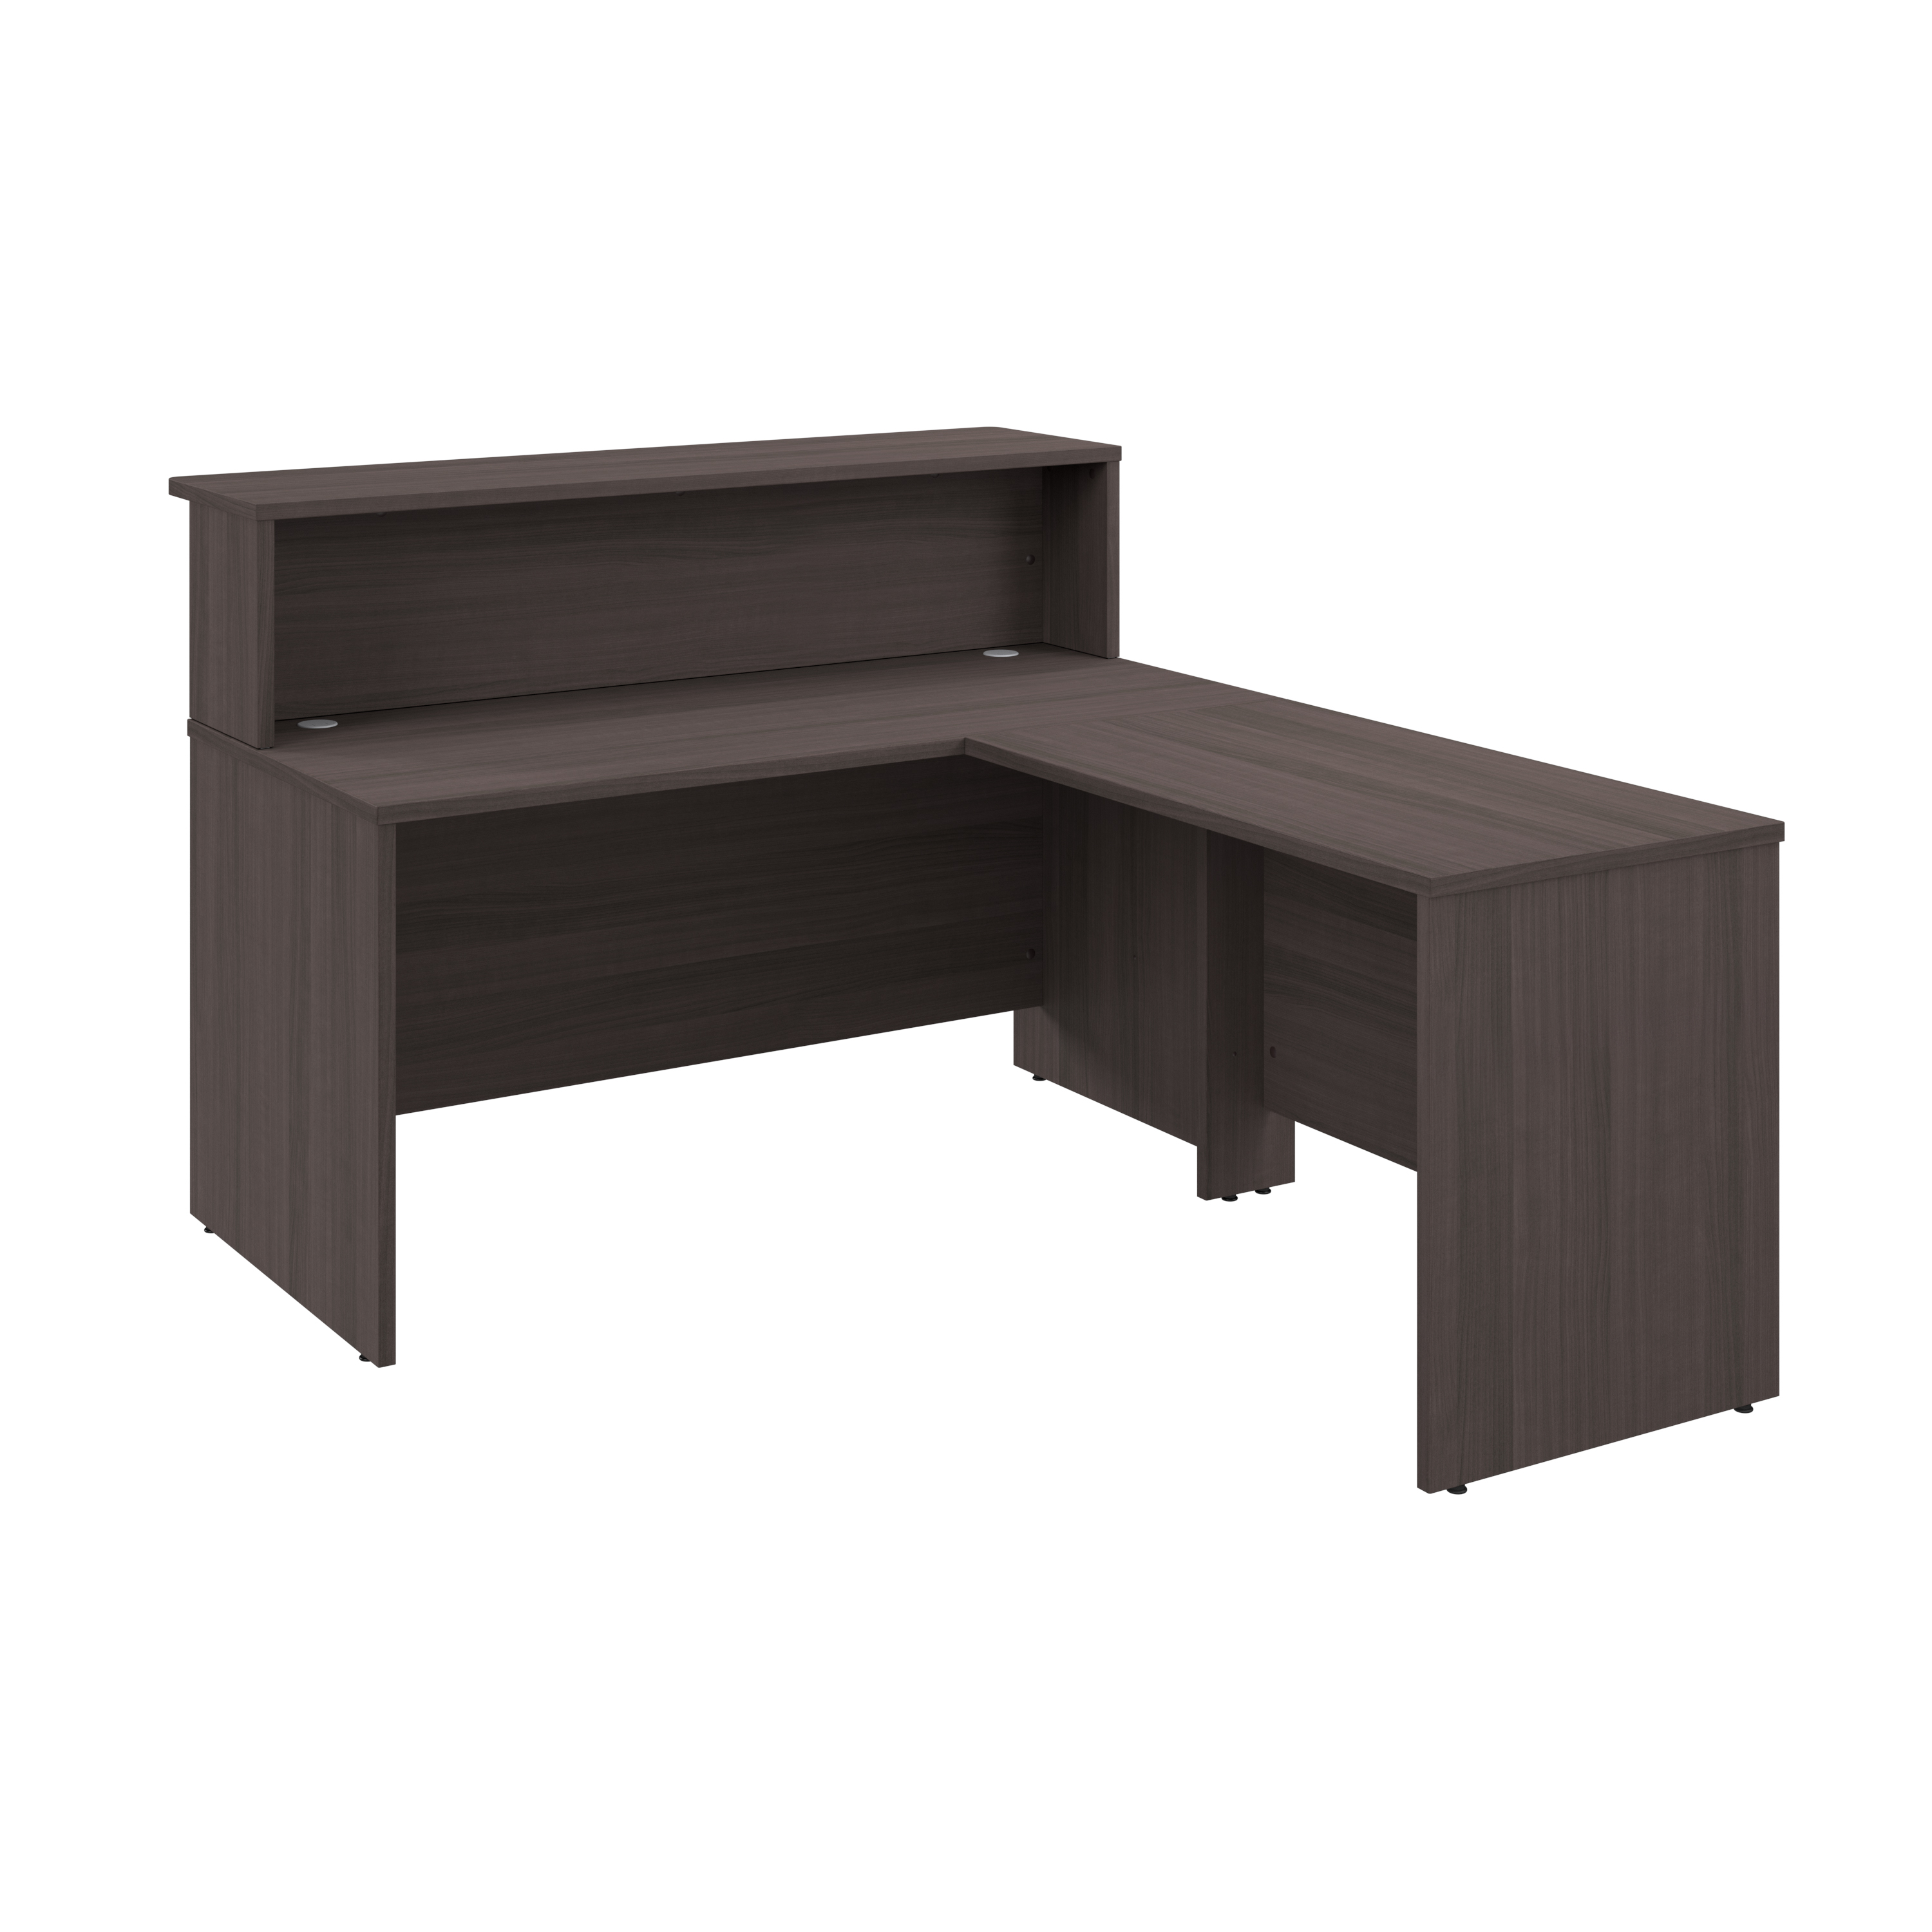 Shop Bush Business Furniture Arrive 60W x 72D L Shaped Reception Desk with Shelf 02 ARV003SG #color_storm gray